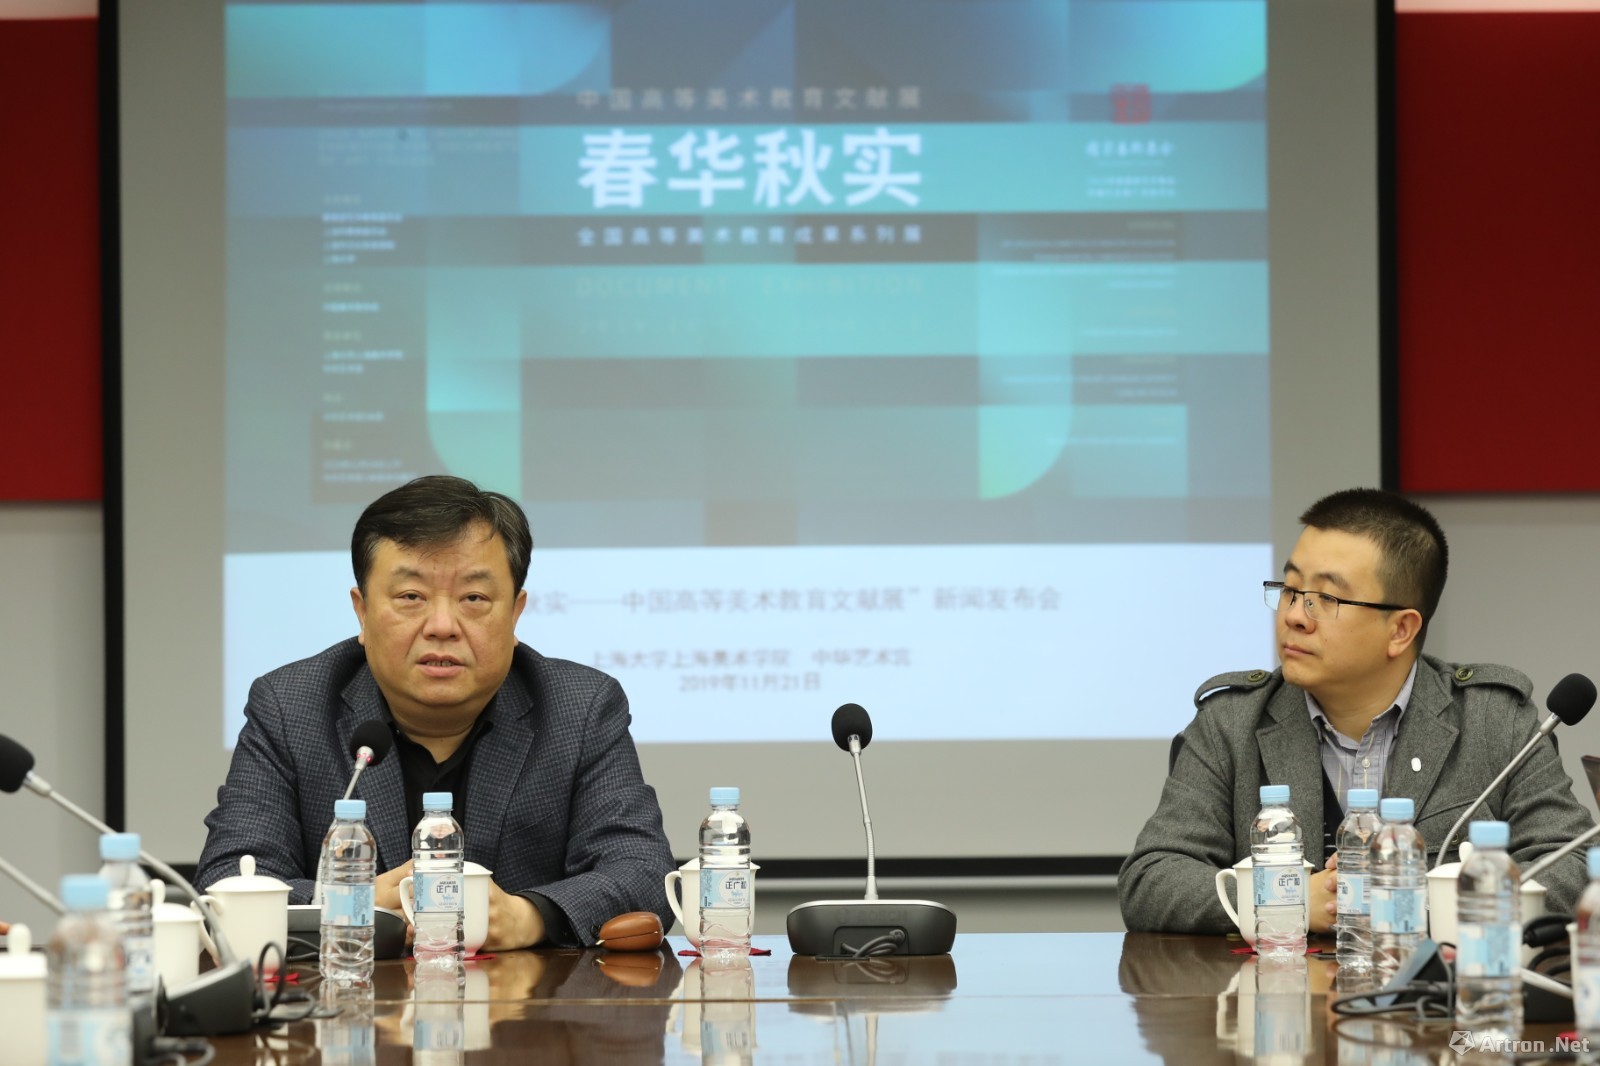 上海美术学院副院长李超(左)与上海美术学院综合办公室主任,院长助理